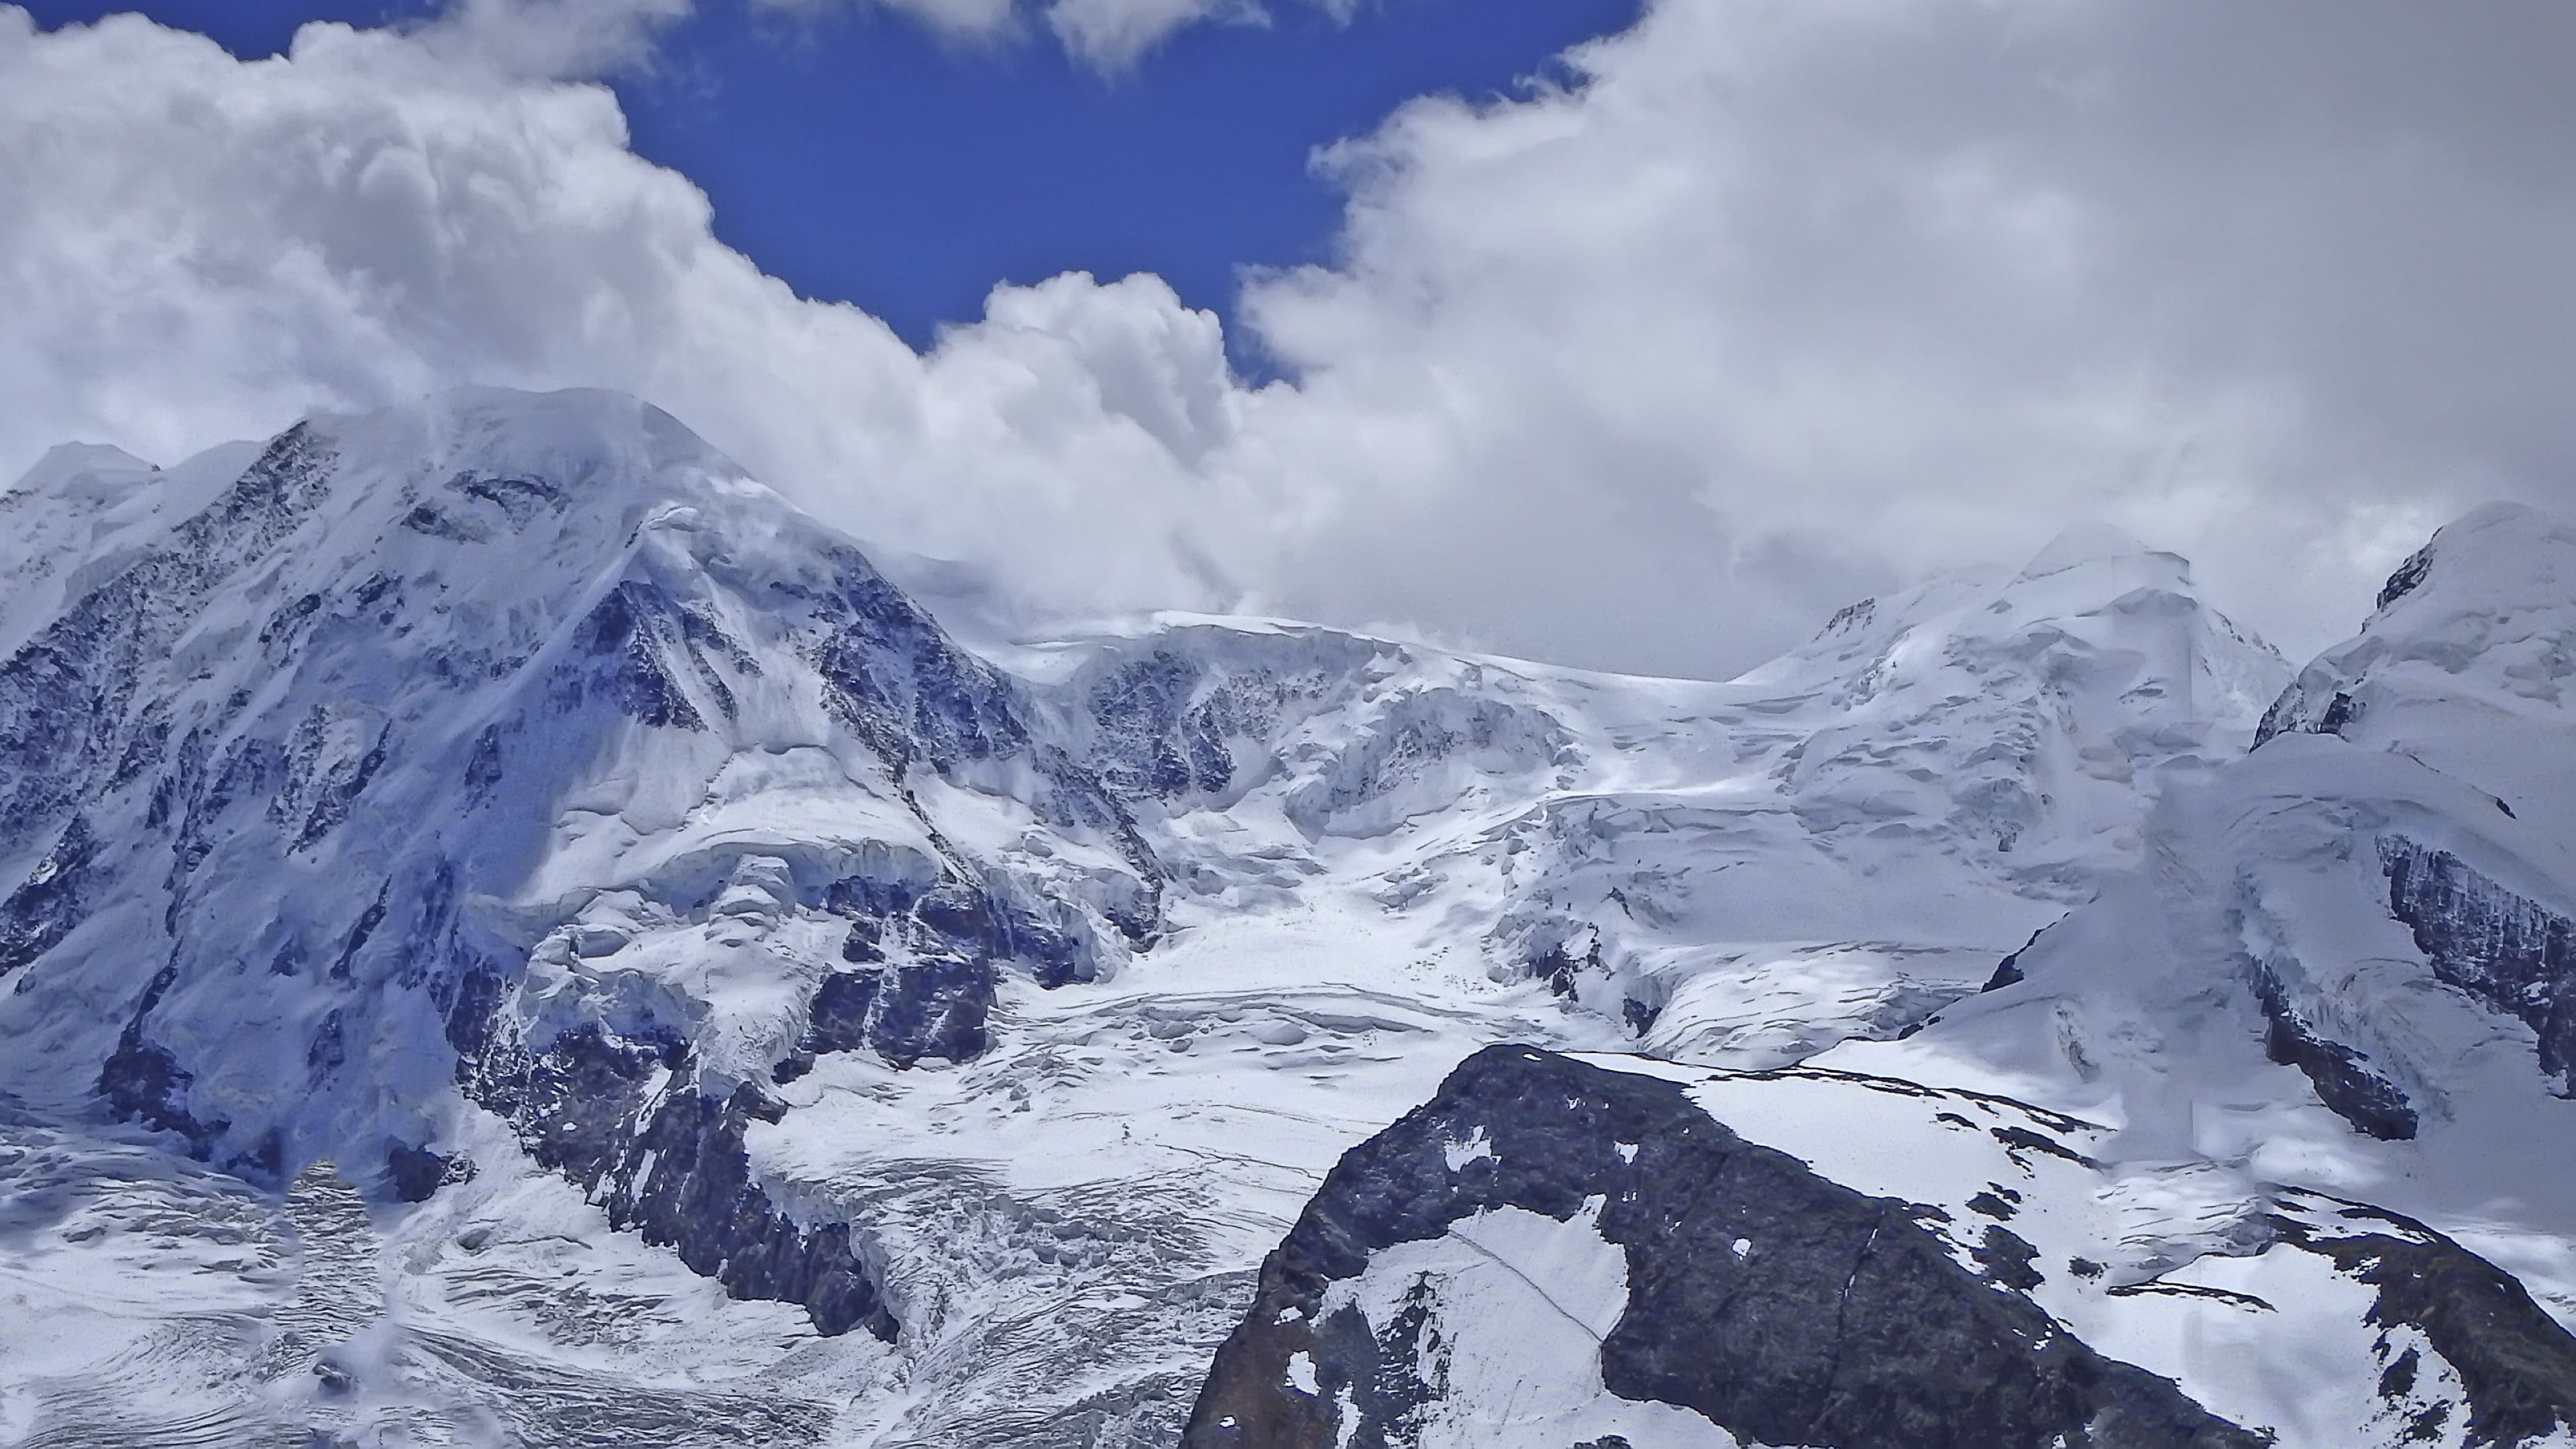 阿尔卑斯山雪景图片桌面壁纸